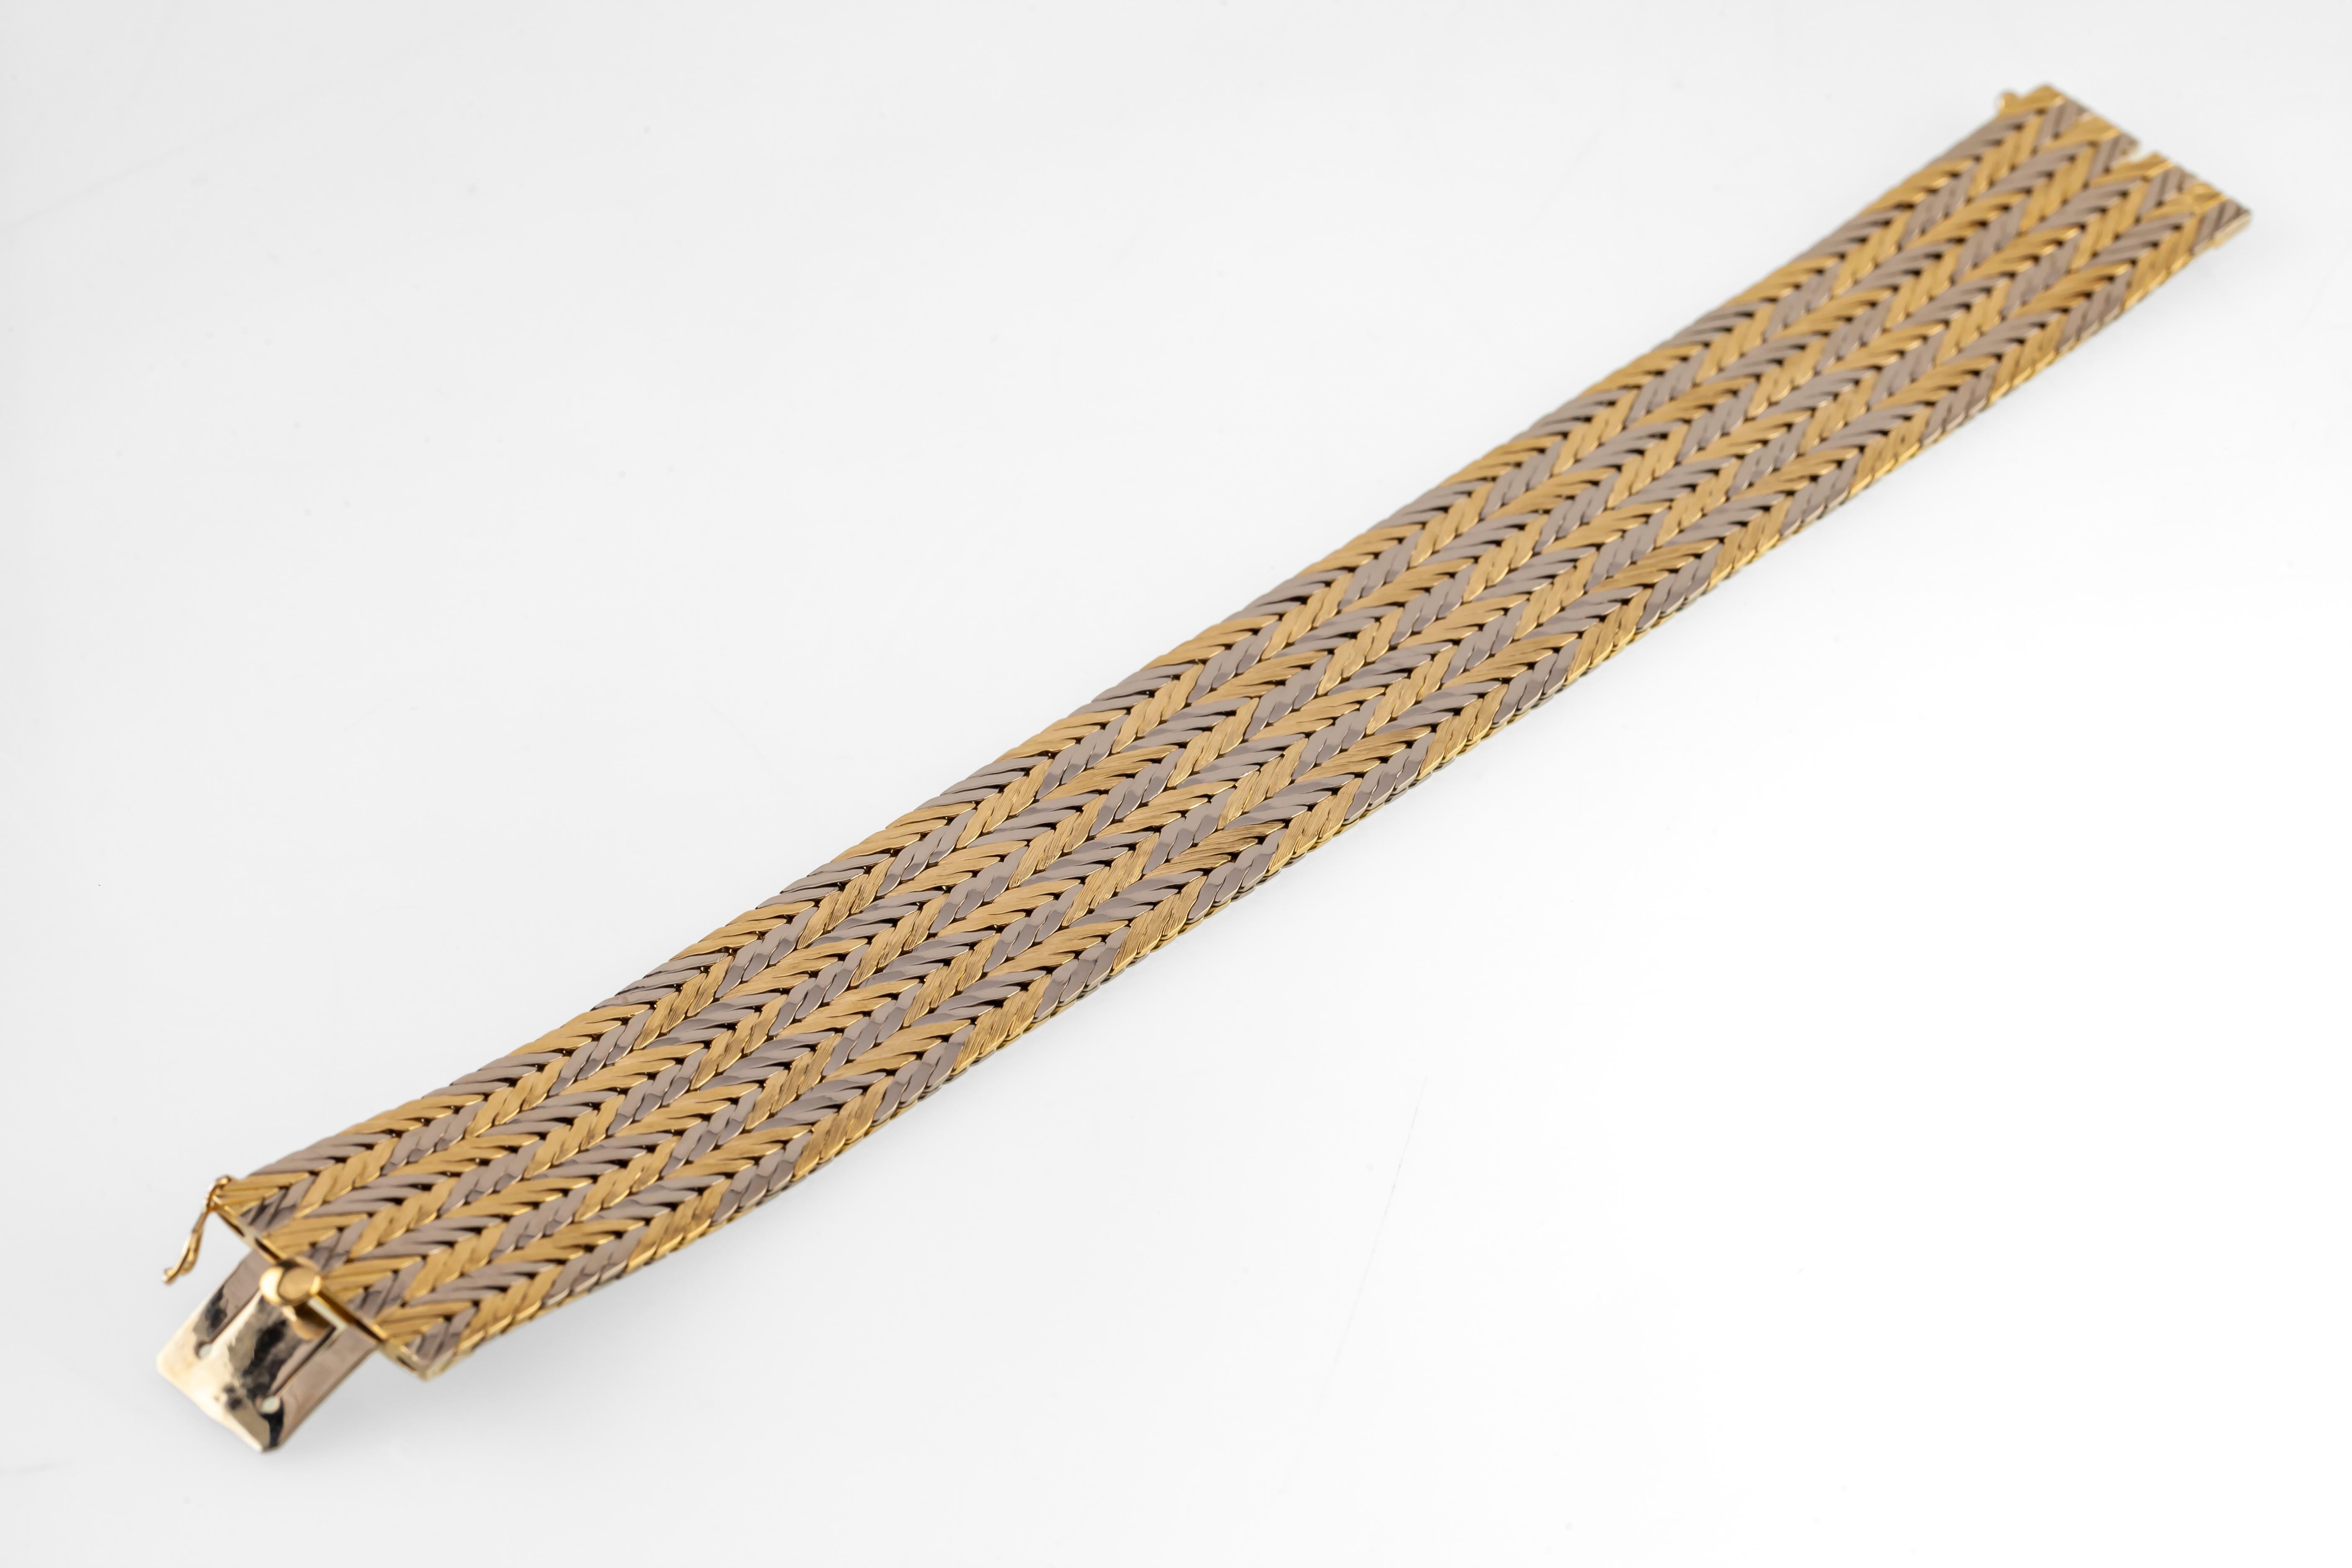 Magnifique bracelet Gubelin en or bicolore 18k
Des bandes d'or jaune et d'or blanc se croisent pour former un motif en damier et en chevron
Longueur totale du bracelet = 7,25